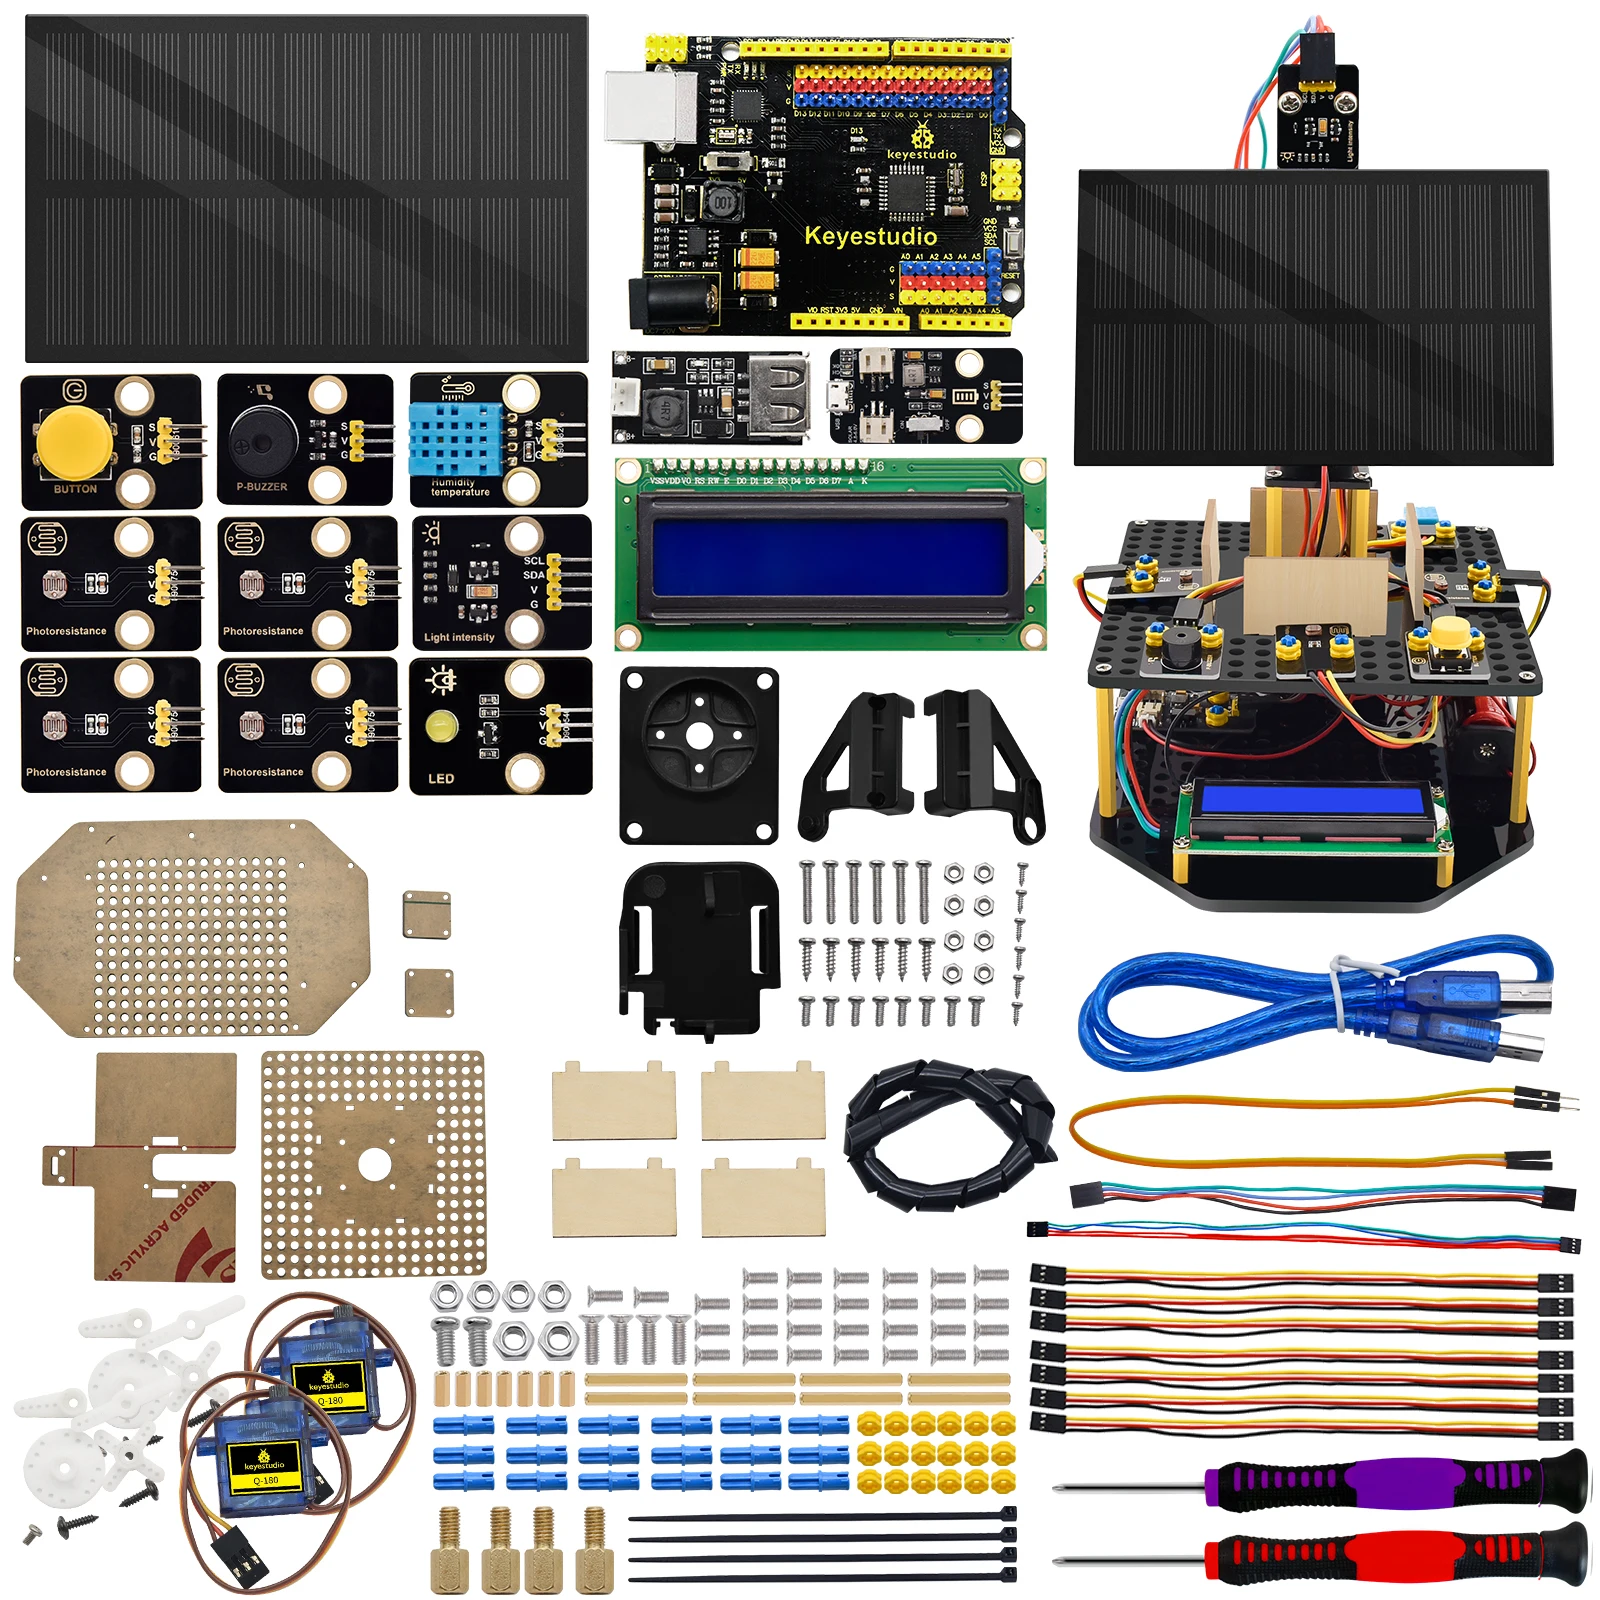 NEW Keyestudio Smart Solar Tracker System Tracking Starter Kit For Arduino STEM Programming Toys DIY For Mobile Phone Charging